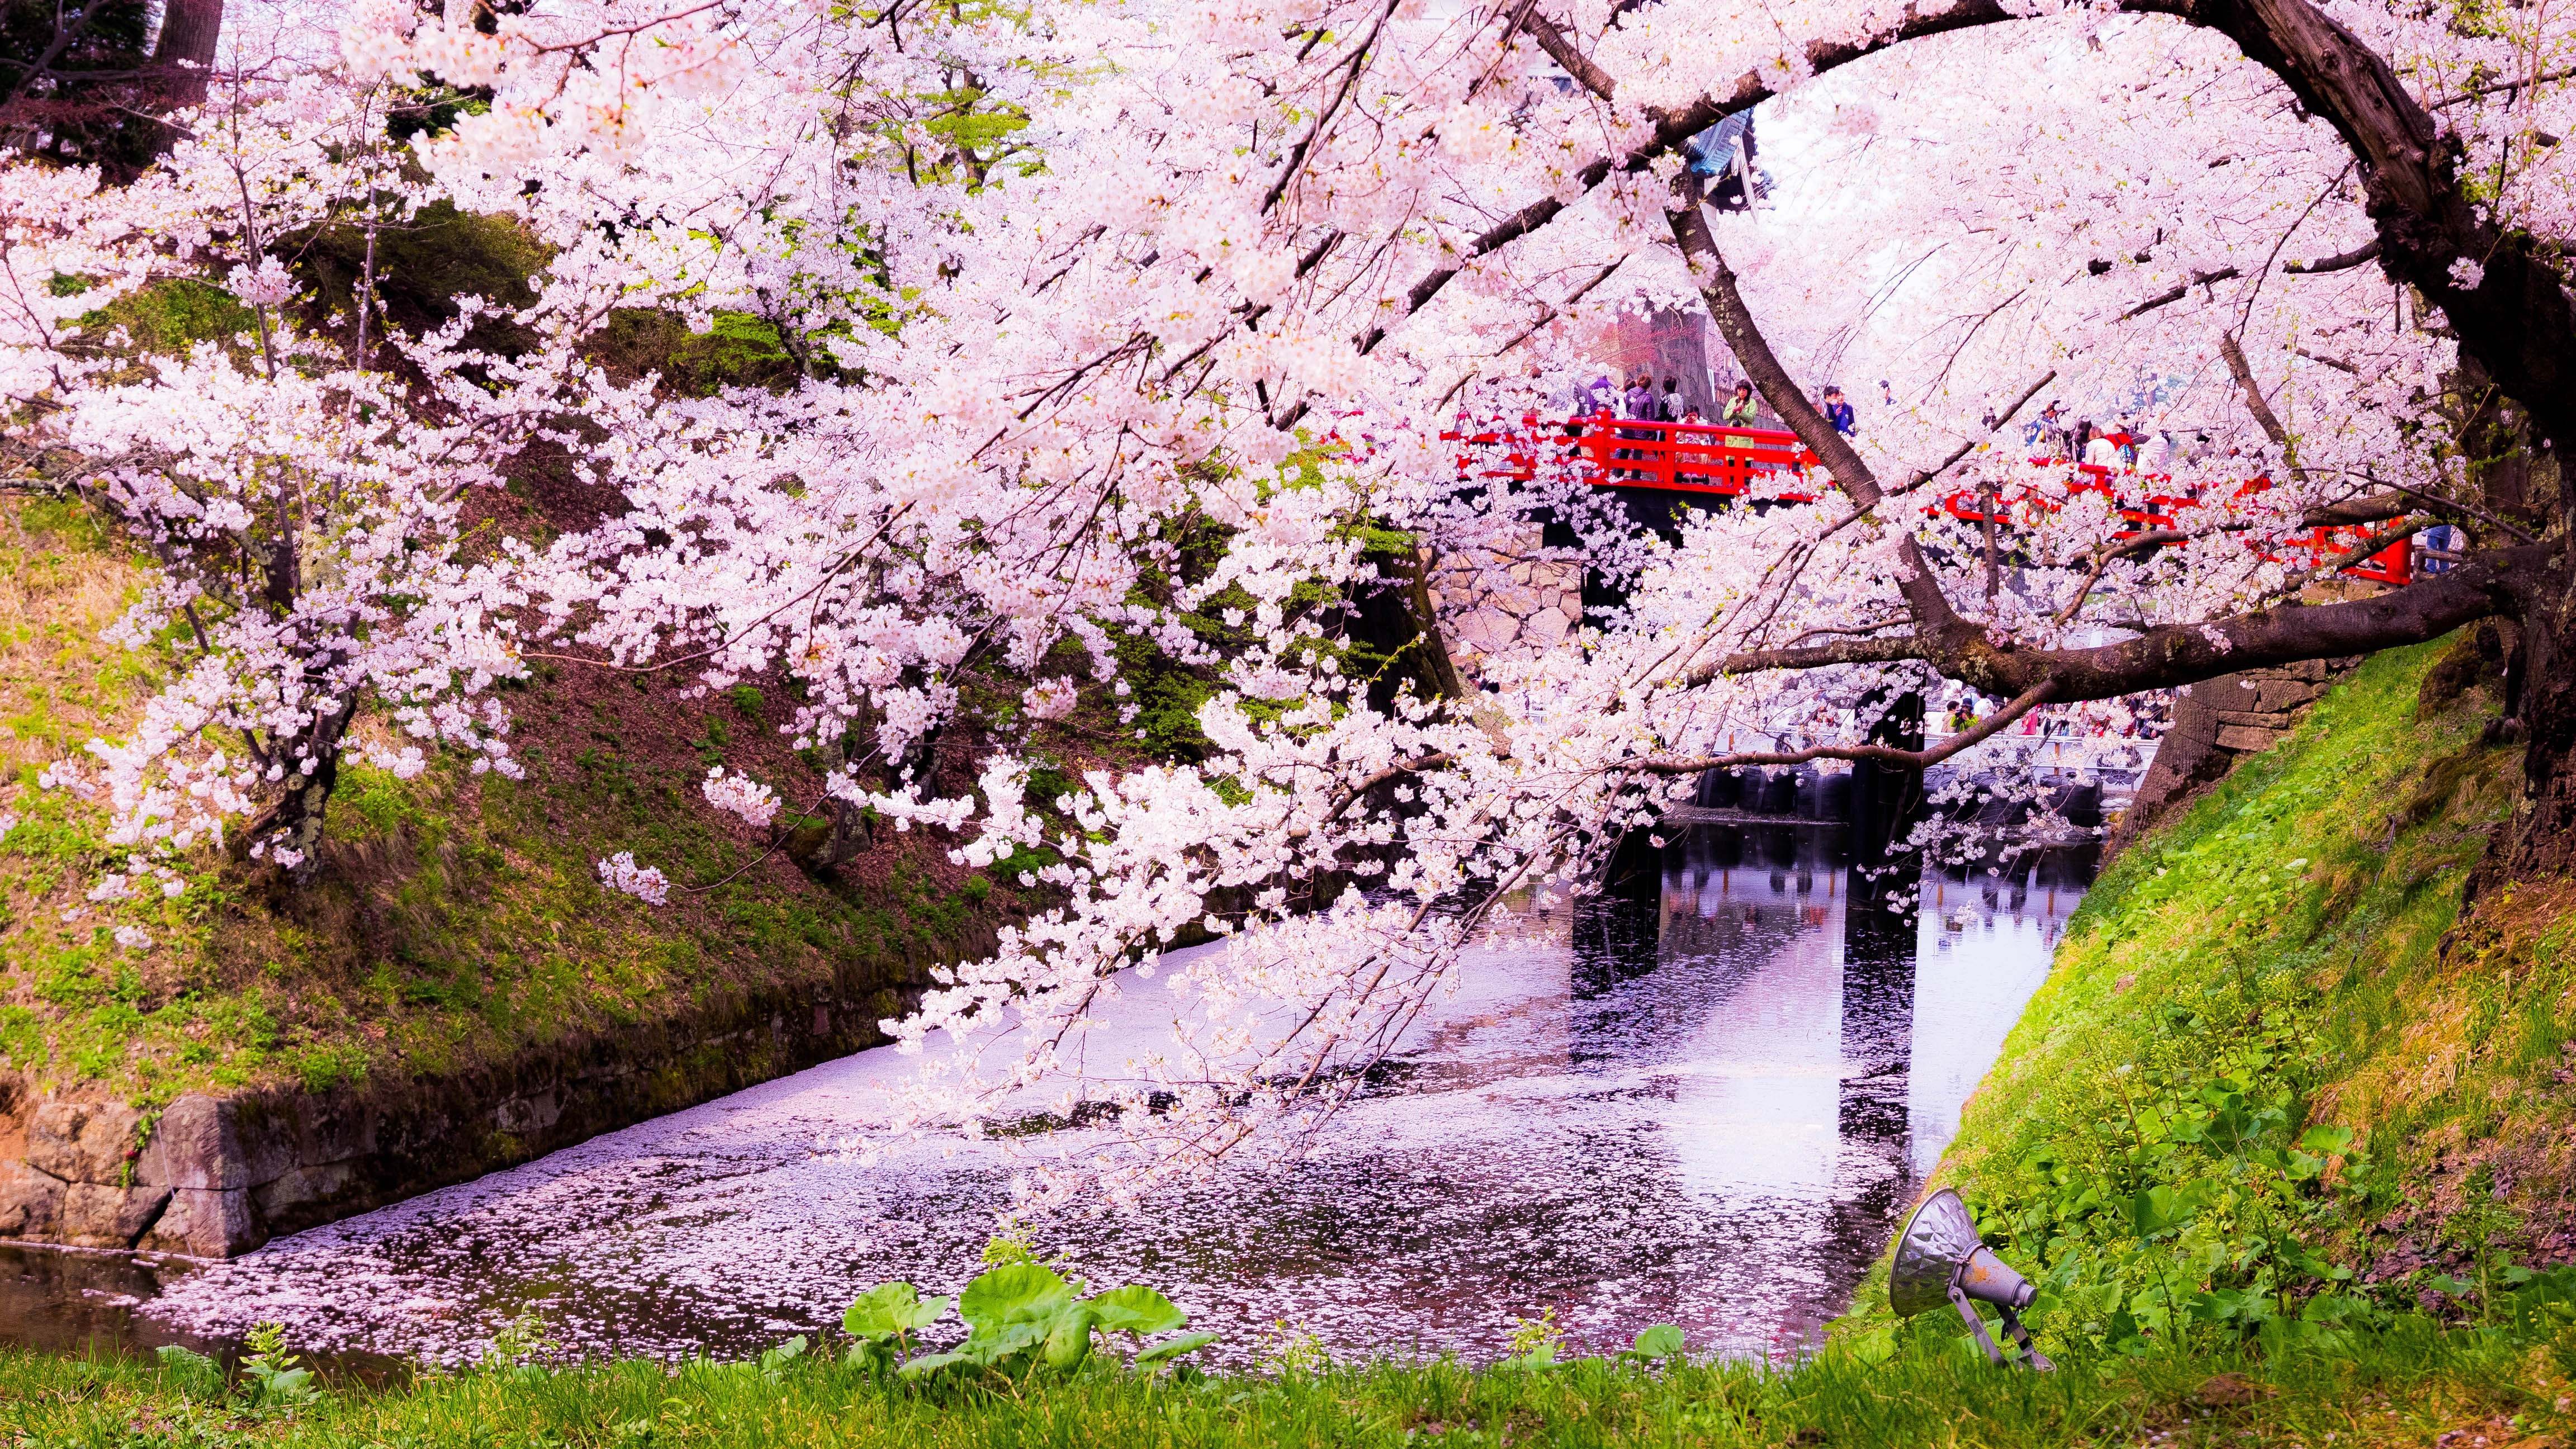 2,600本の桜が咲く名所、青森『弘前城公園』